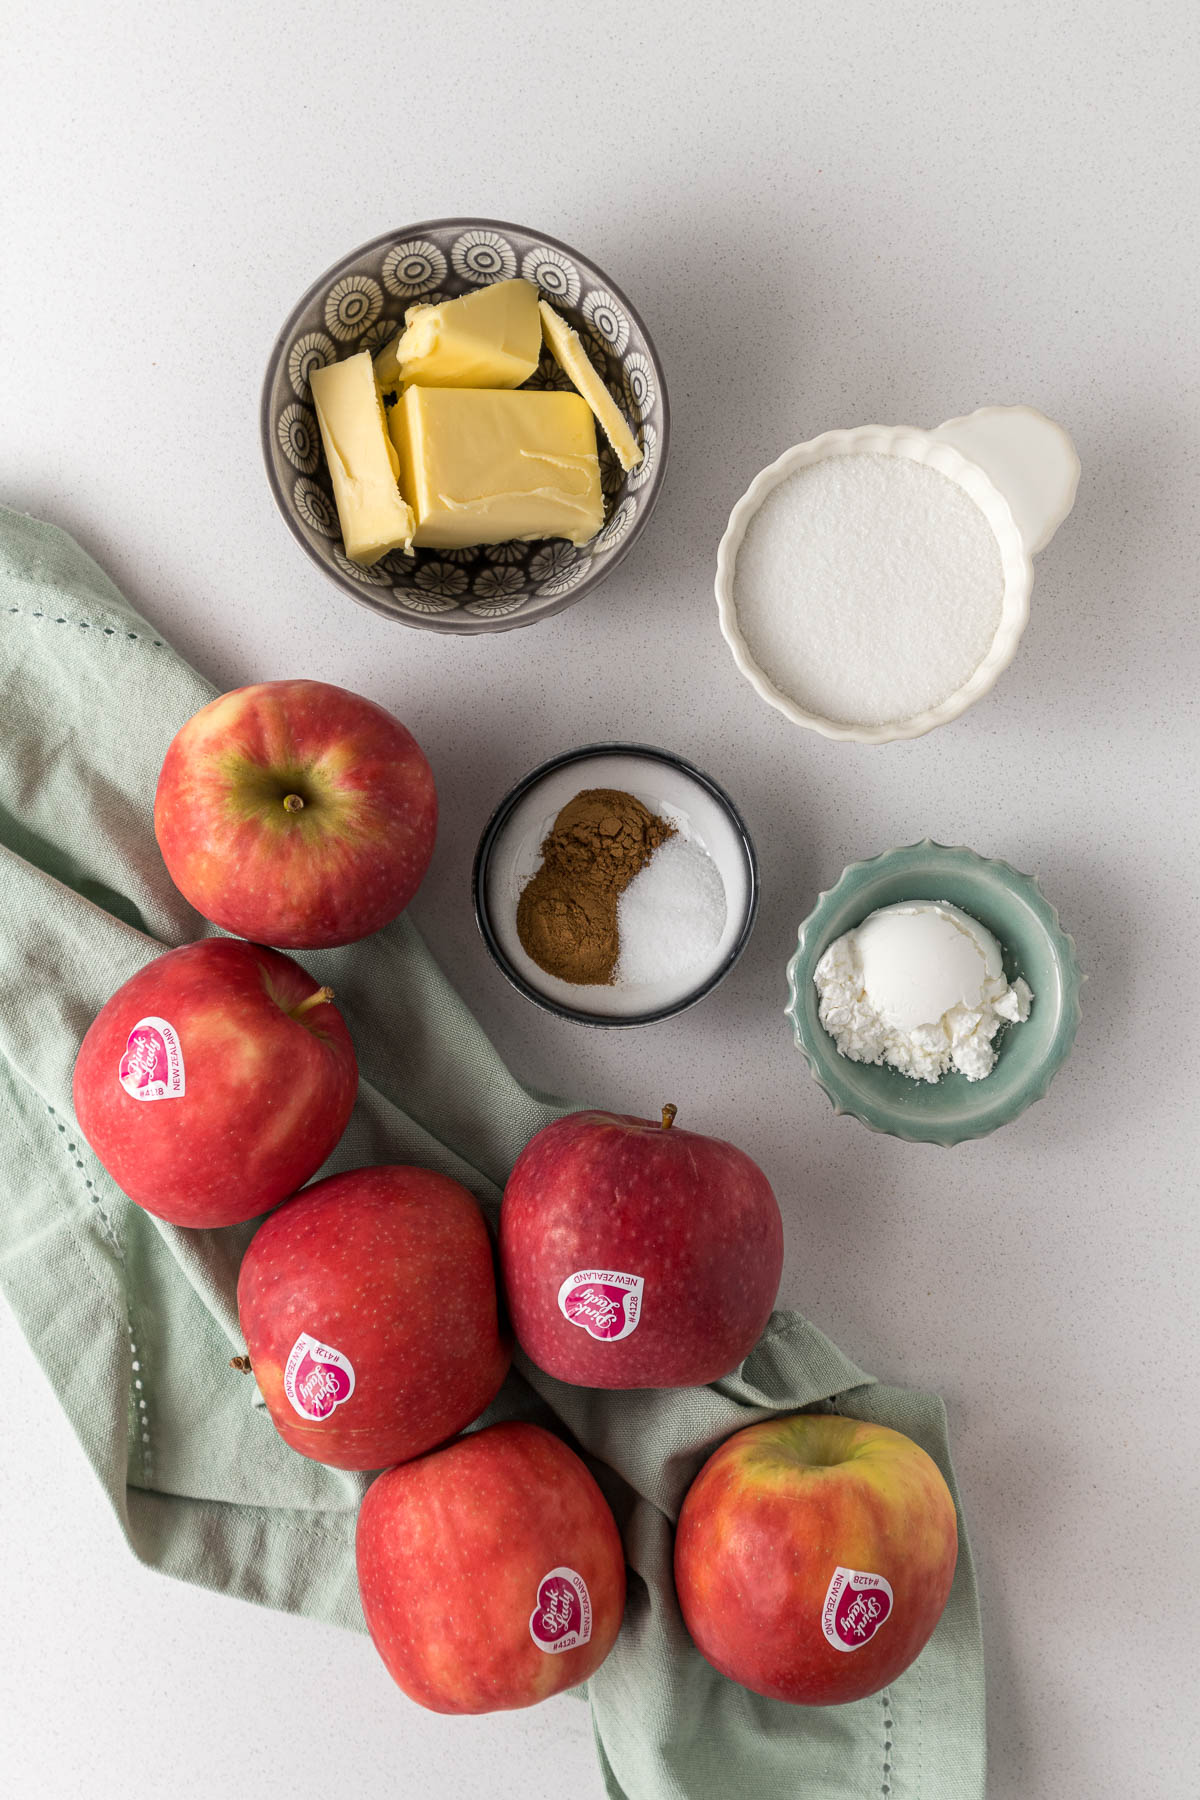 Apple Pie Filling Ingredients.